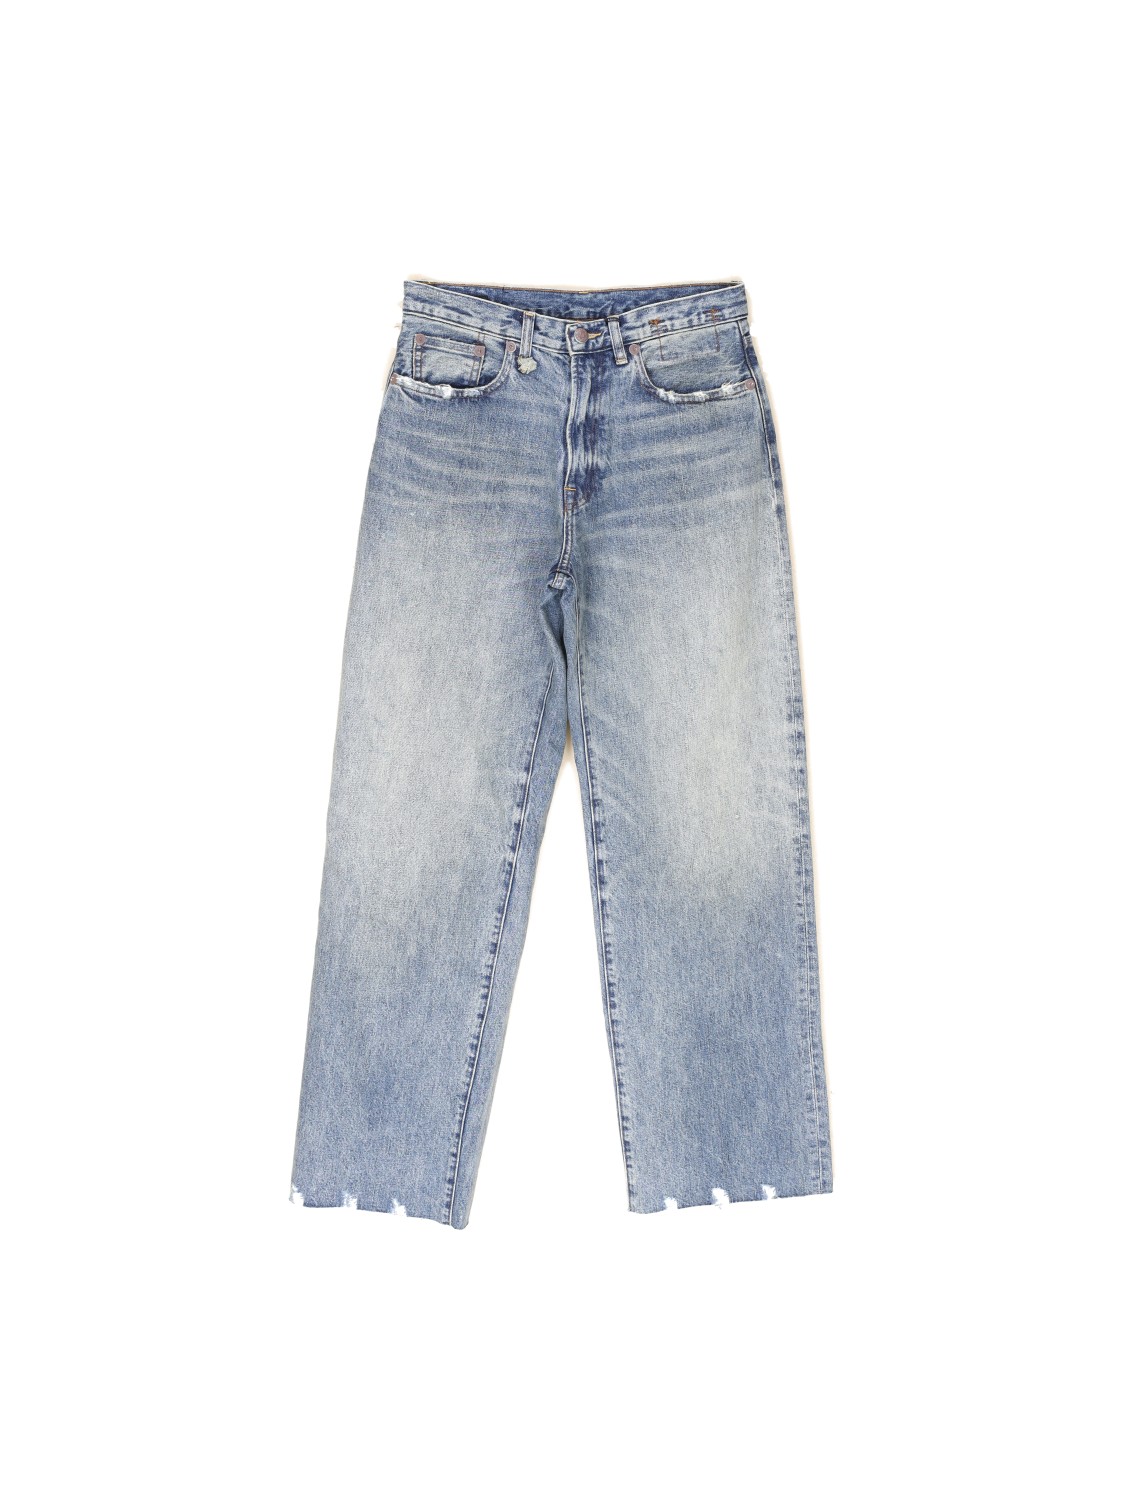 Dárcy - Vintage Boyfriend Jeans mit Washed-Effekten	 